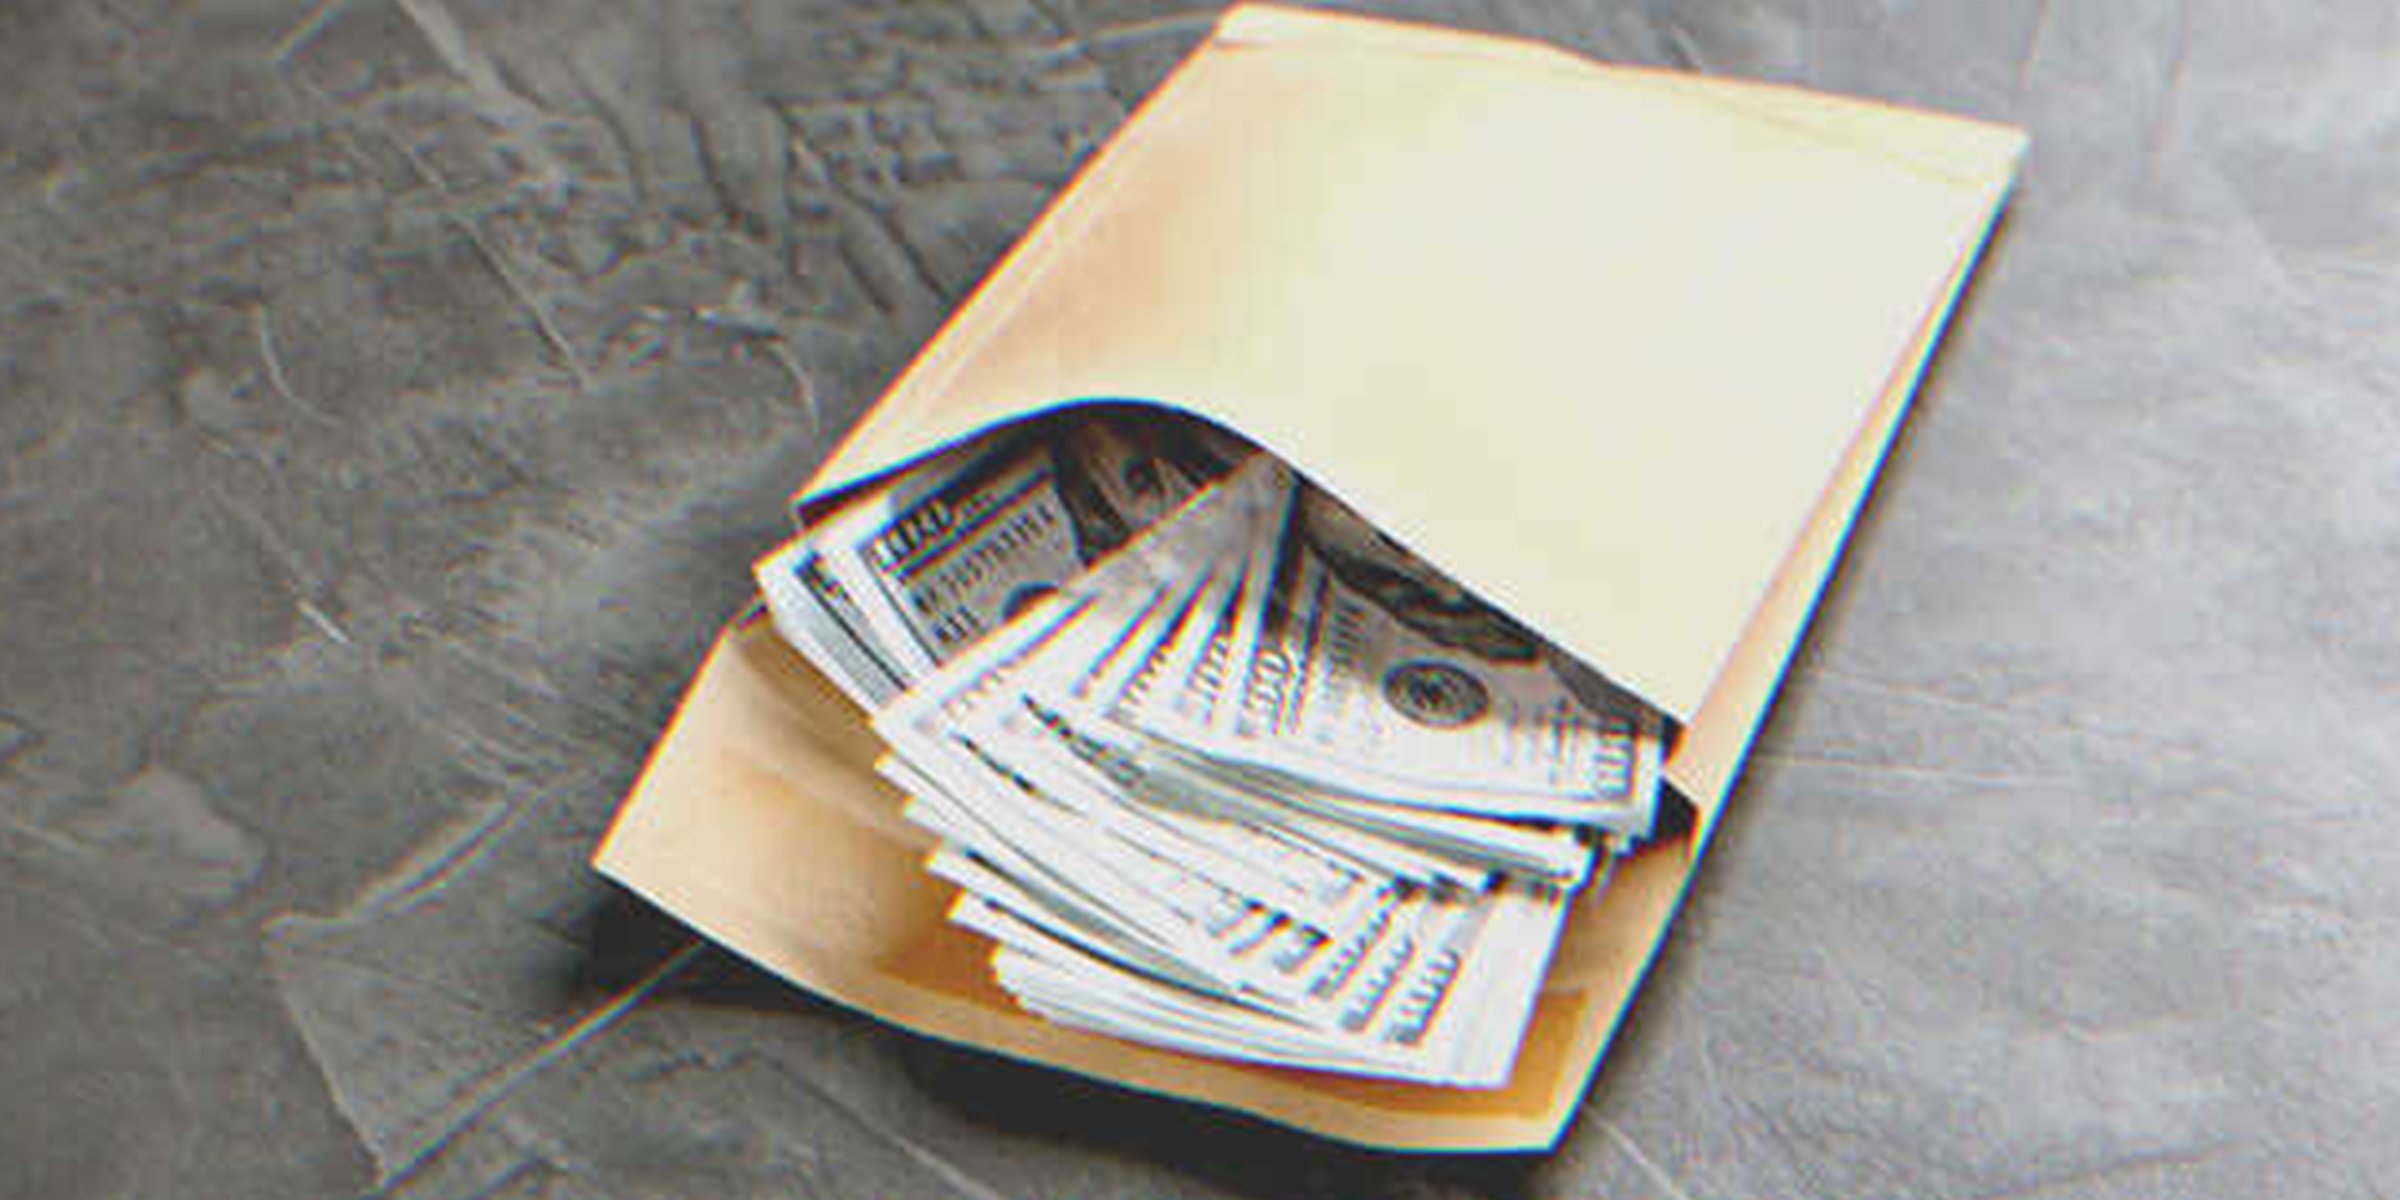 An envelope full of money | Source: Shutterstock